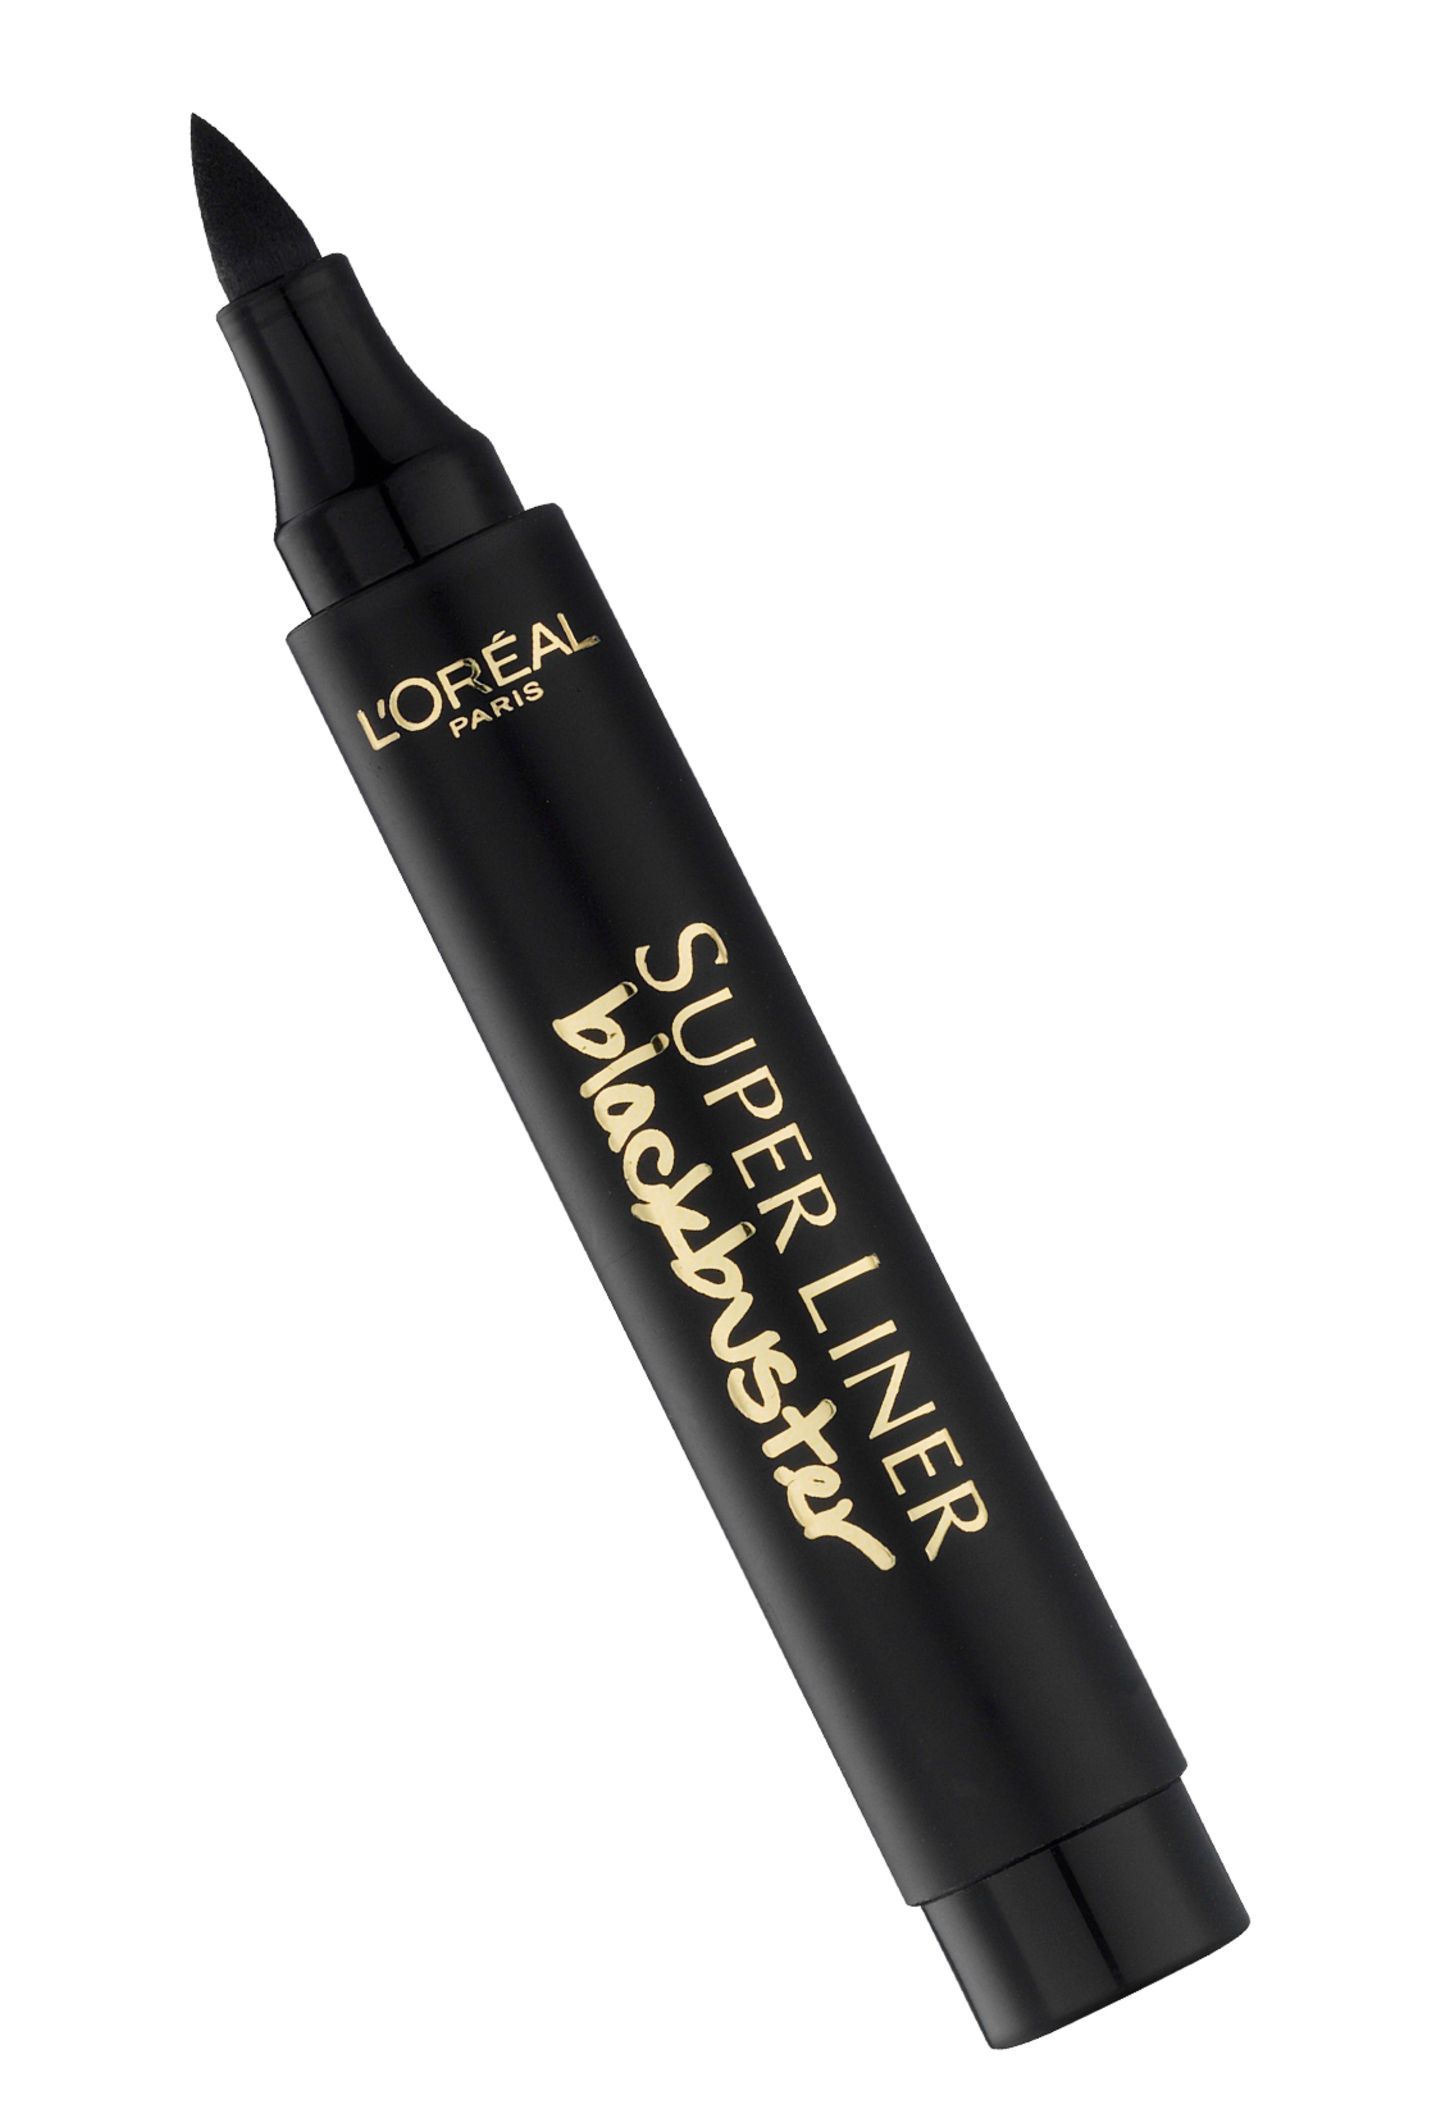 Mit dem "Super Liner Blackbuster" lässt sich ein ausdrucksstarker Lidstrich ziehen. Von L'Oréal Paris, ca. 8 Euro